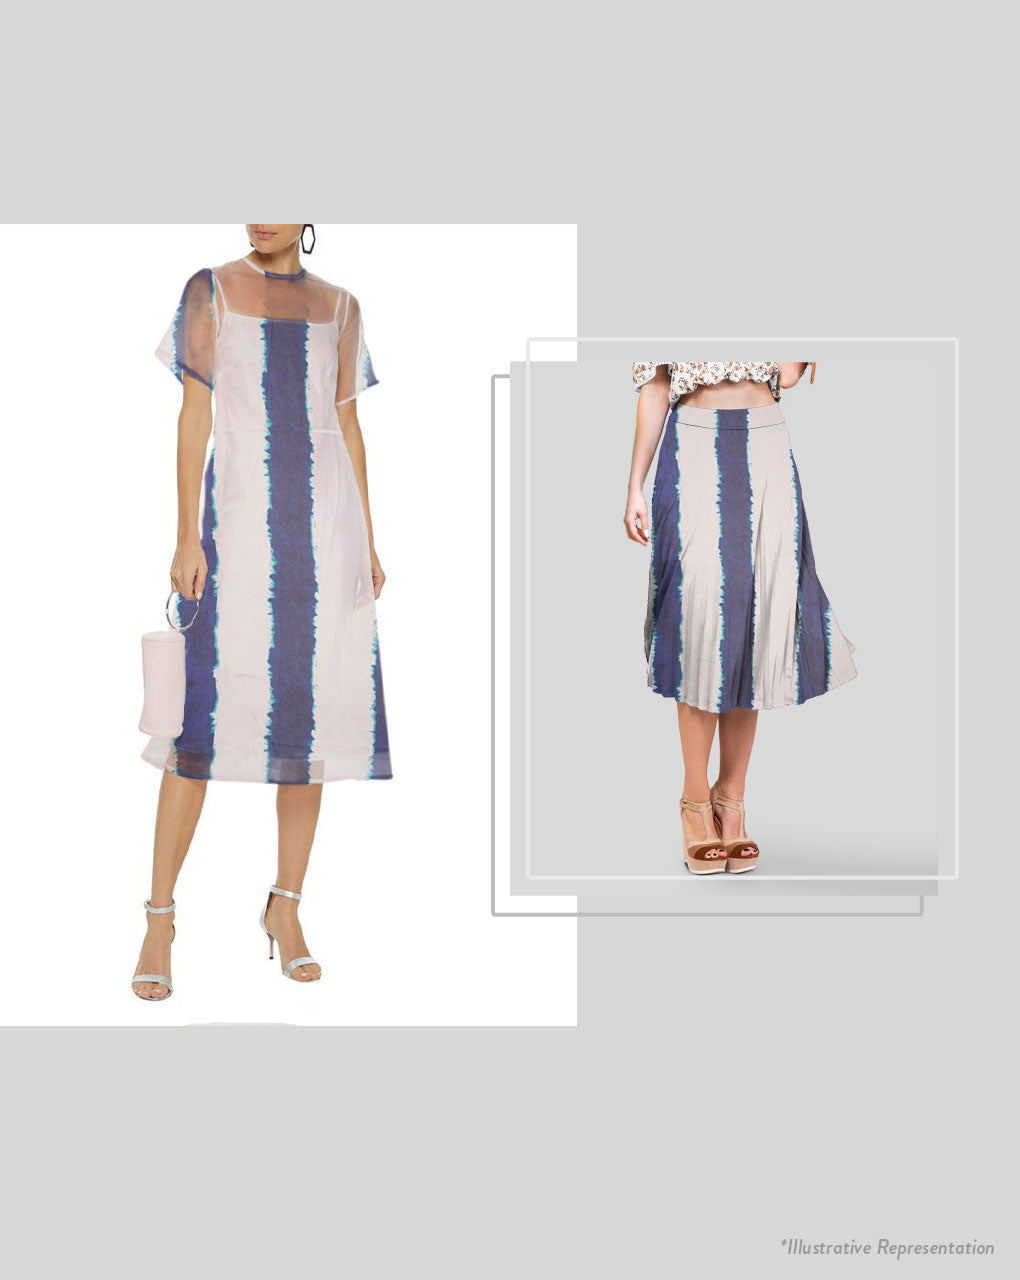 Tie & Dye Digital Print Georgette Fabric